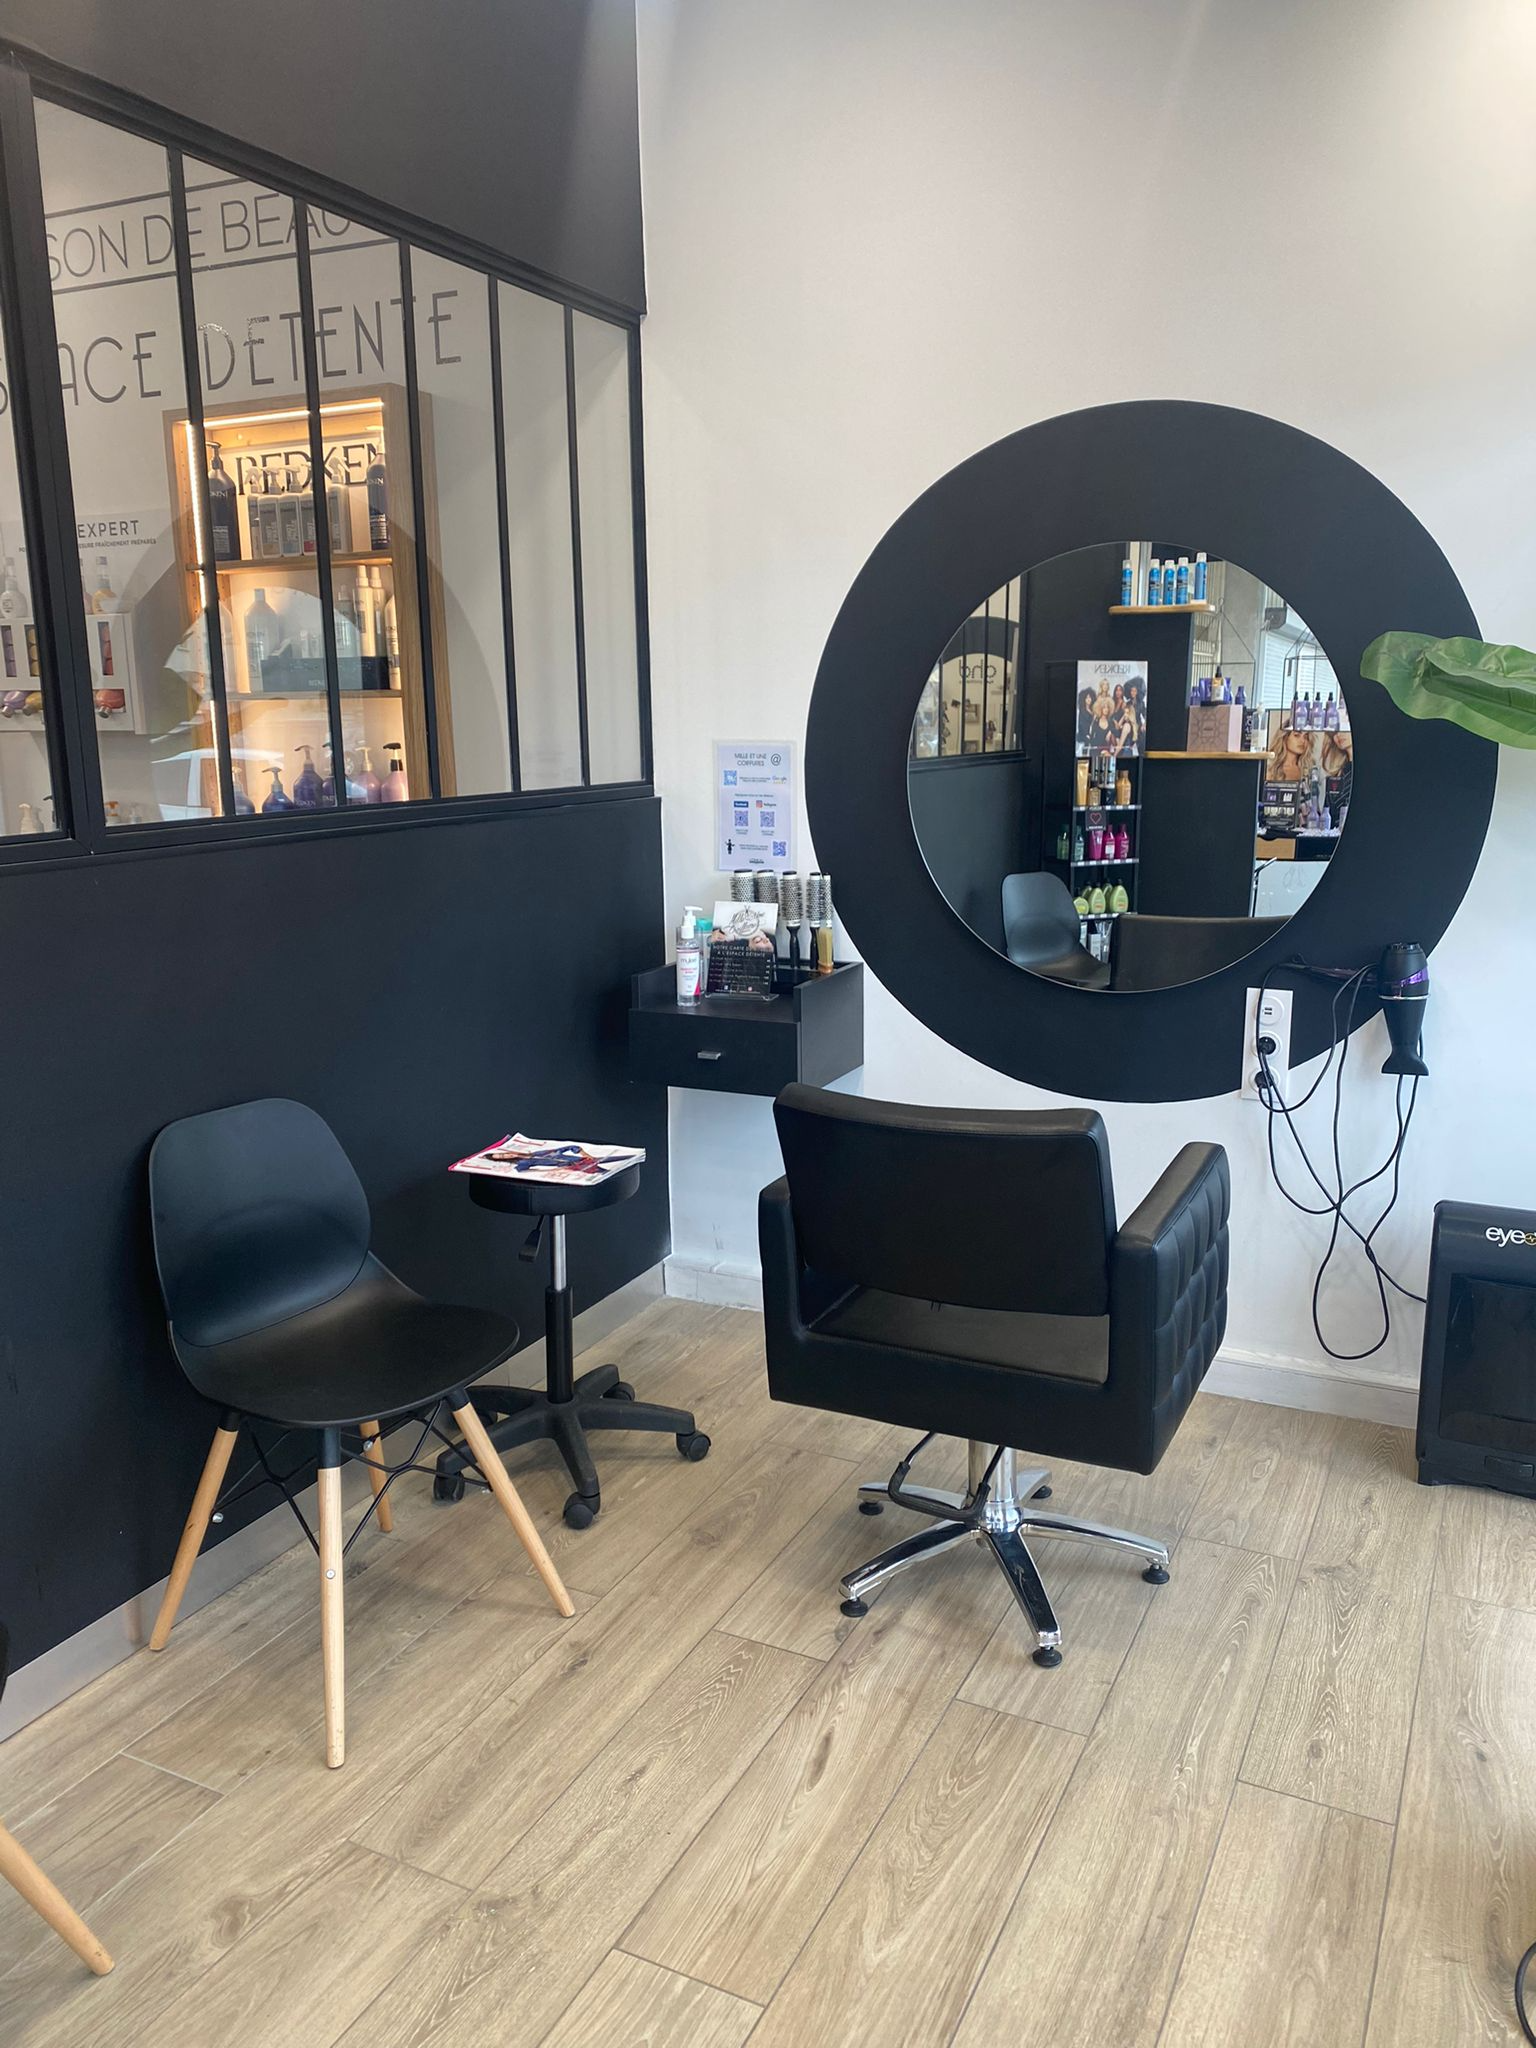 Salon de coiffure à vendre - 56.0 m2 - 77 - Seine-et-Marne